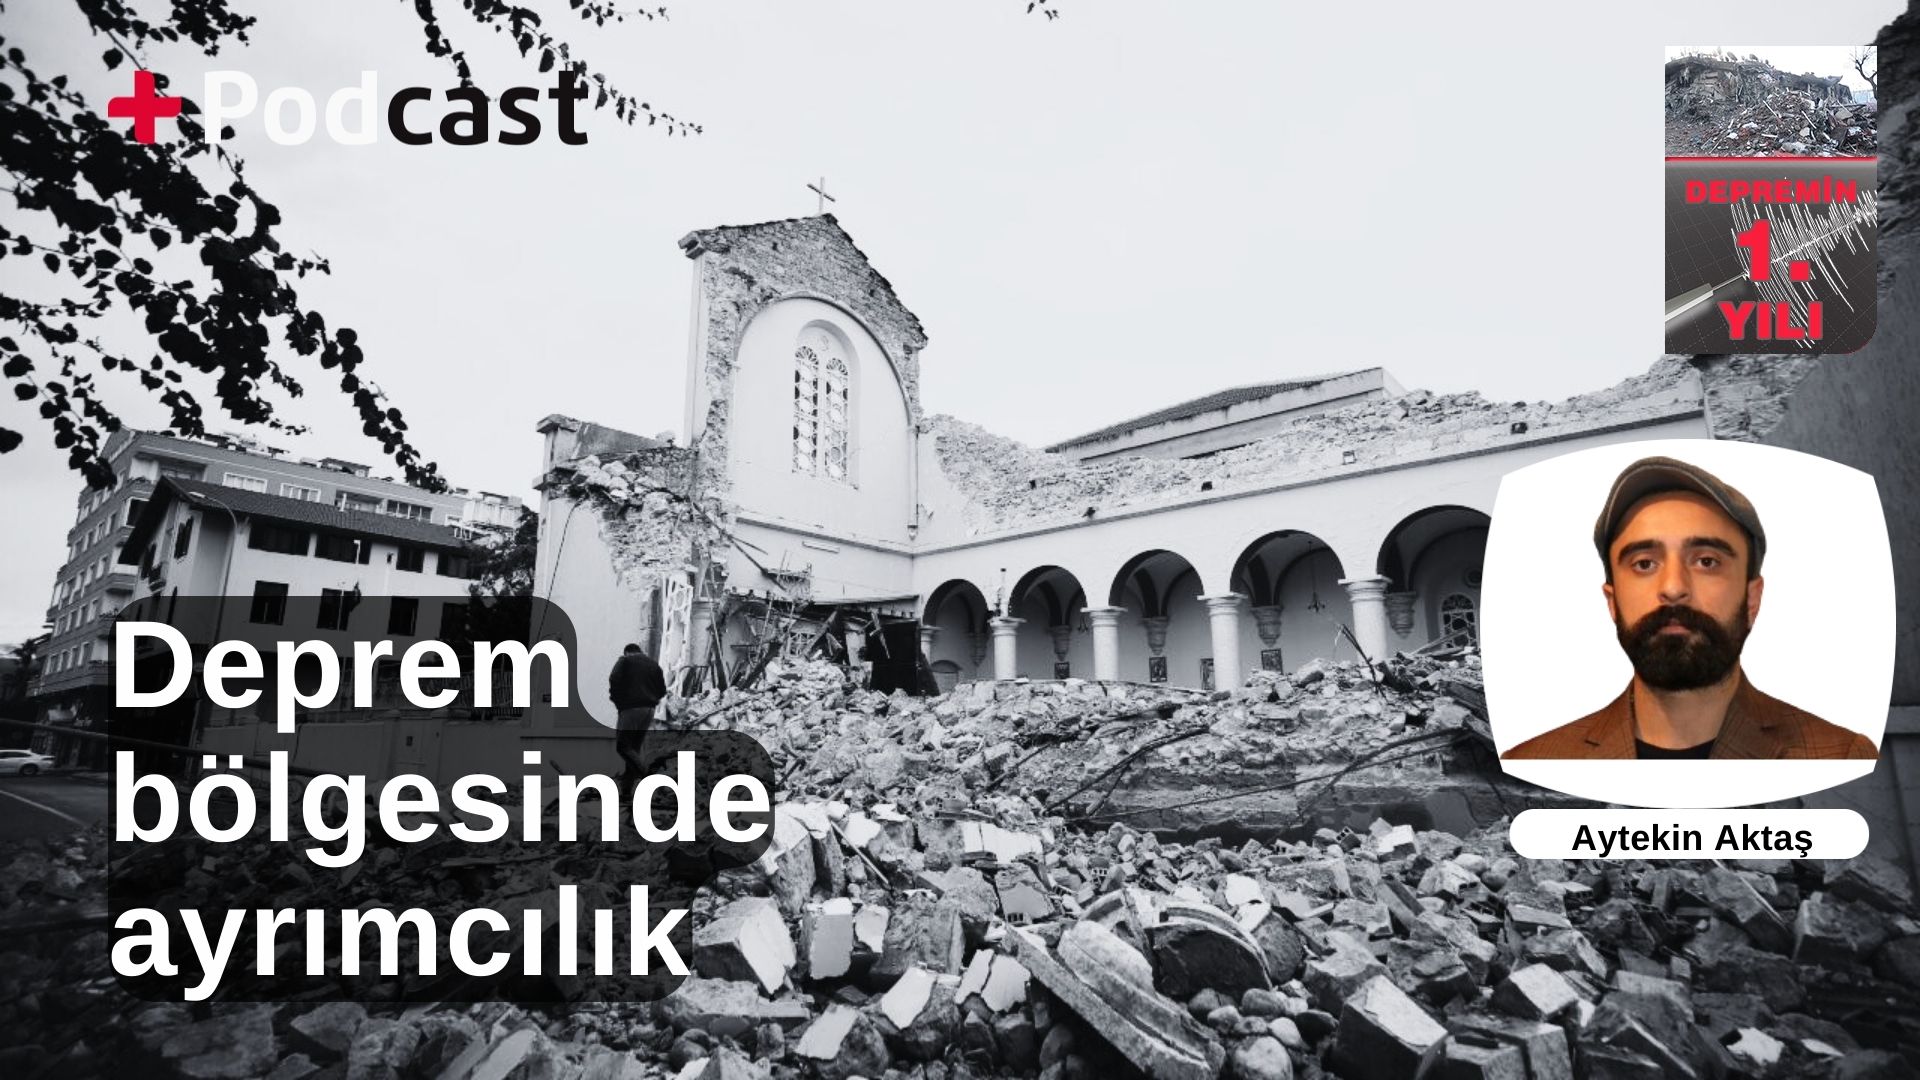 Deprem bölgesinde neler yaşandı? Avukat Aytekin Aktaş anlatıyor: En büyük ayrımcılık mağduru grup Aleviler | +PODCAST